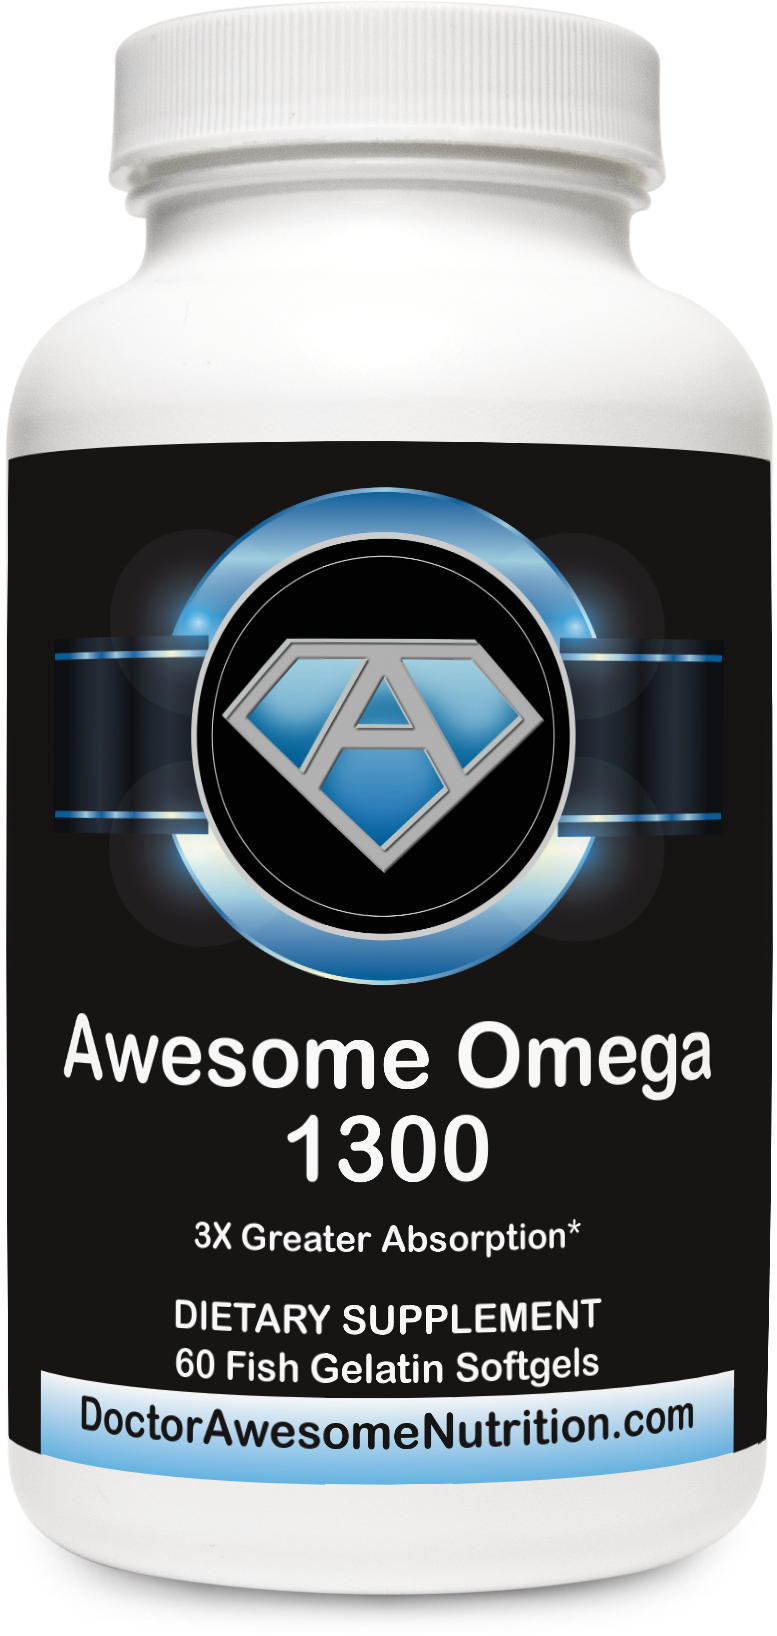 Awesome Omega 1300